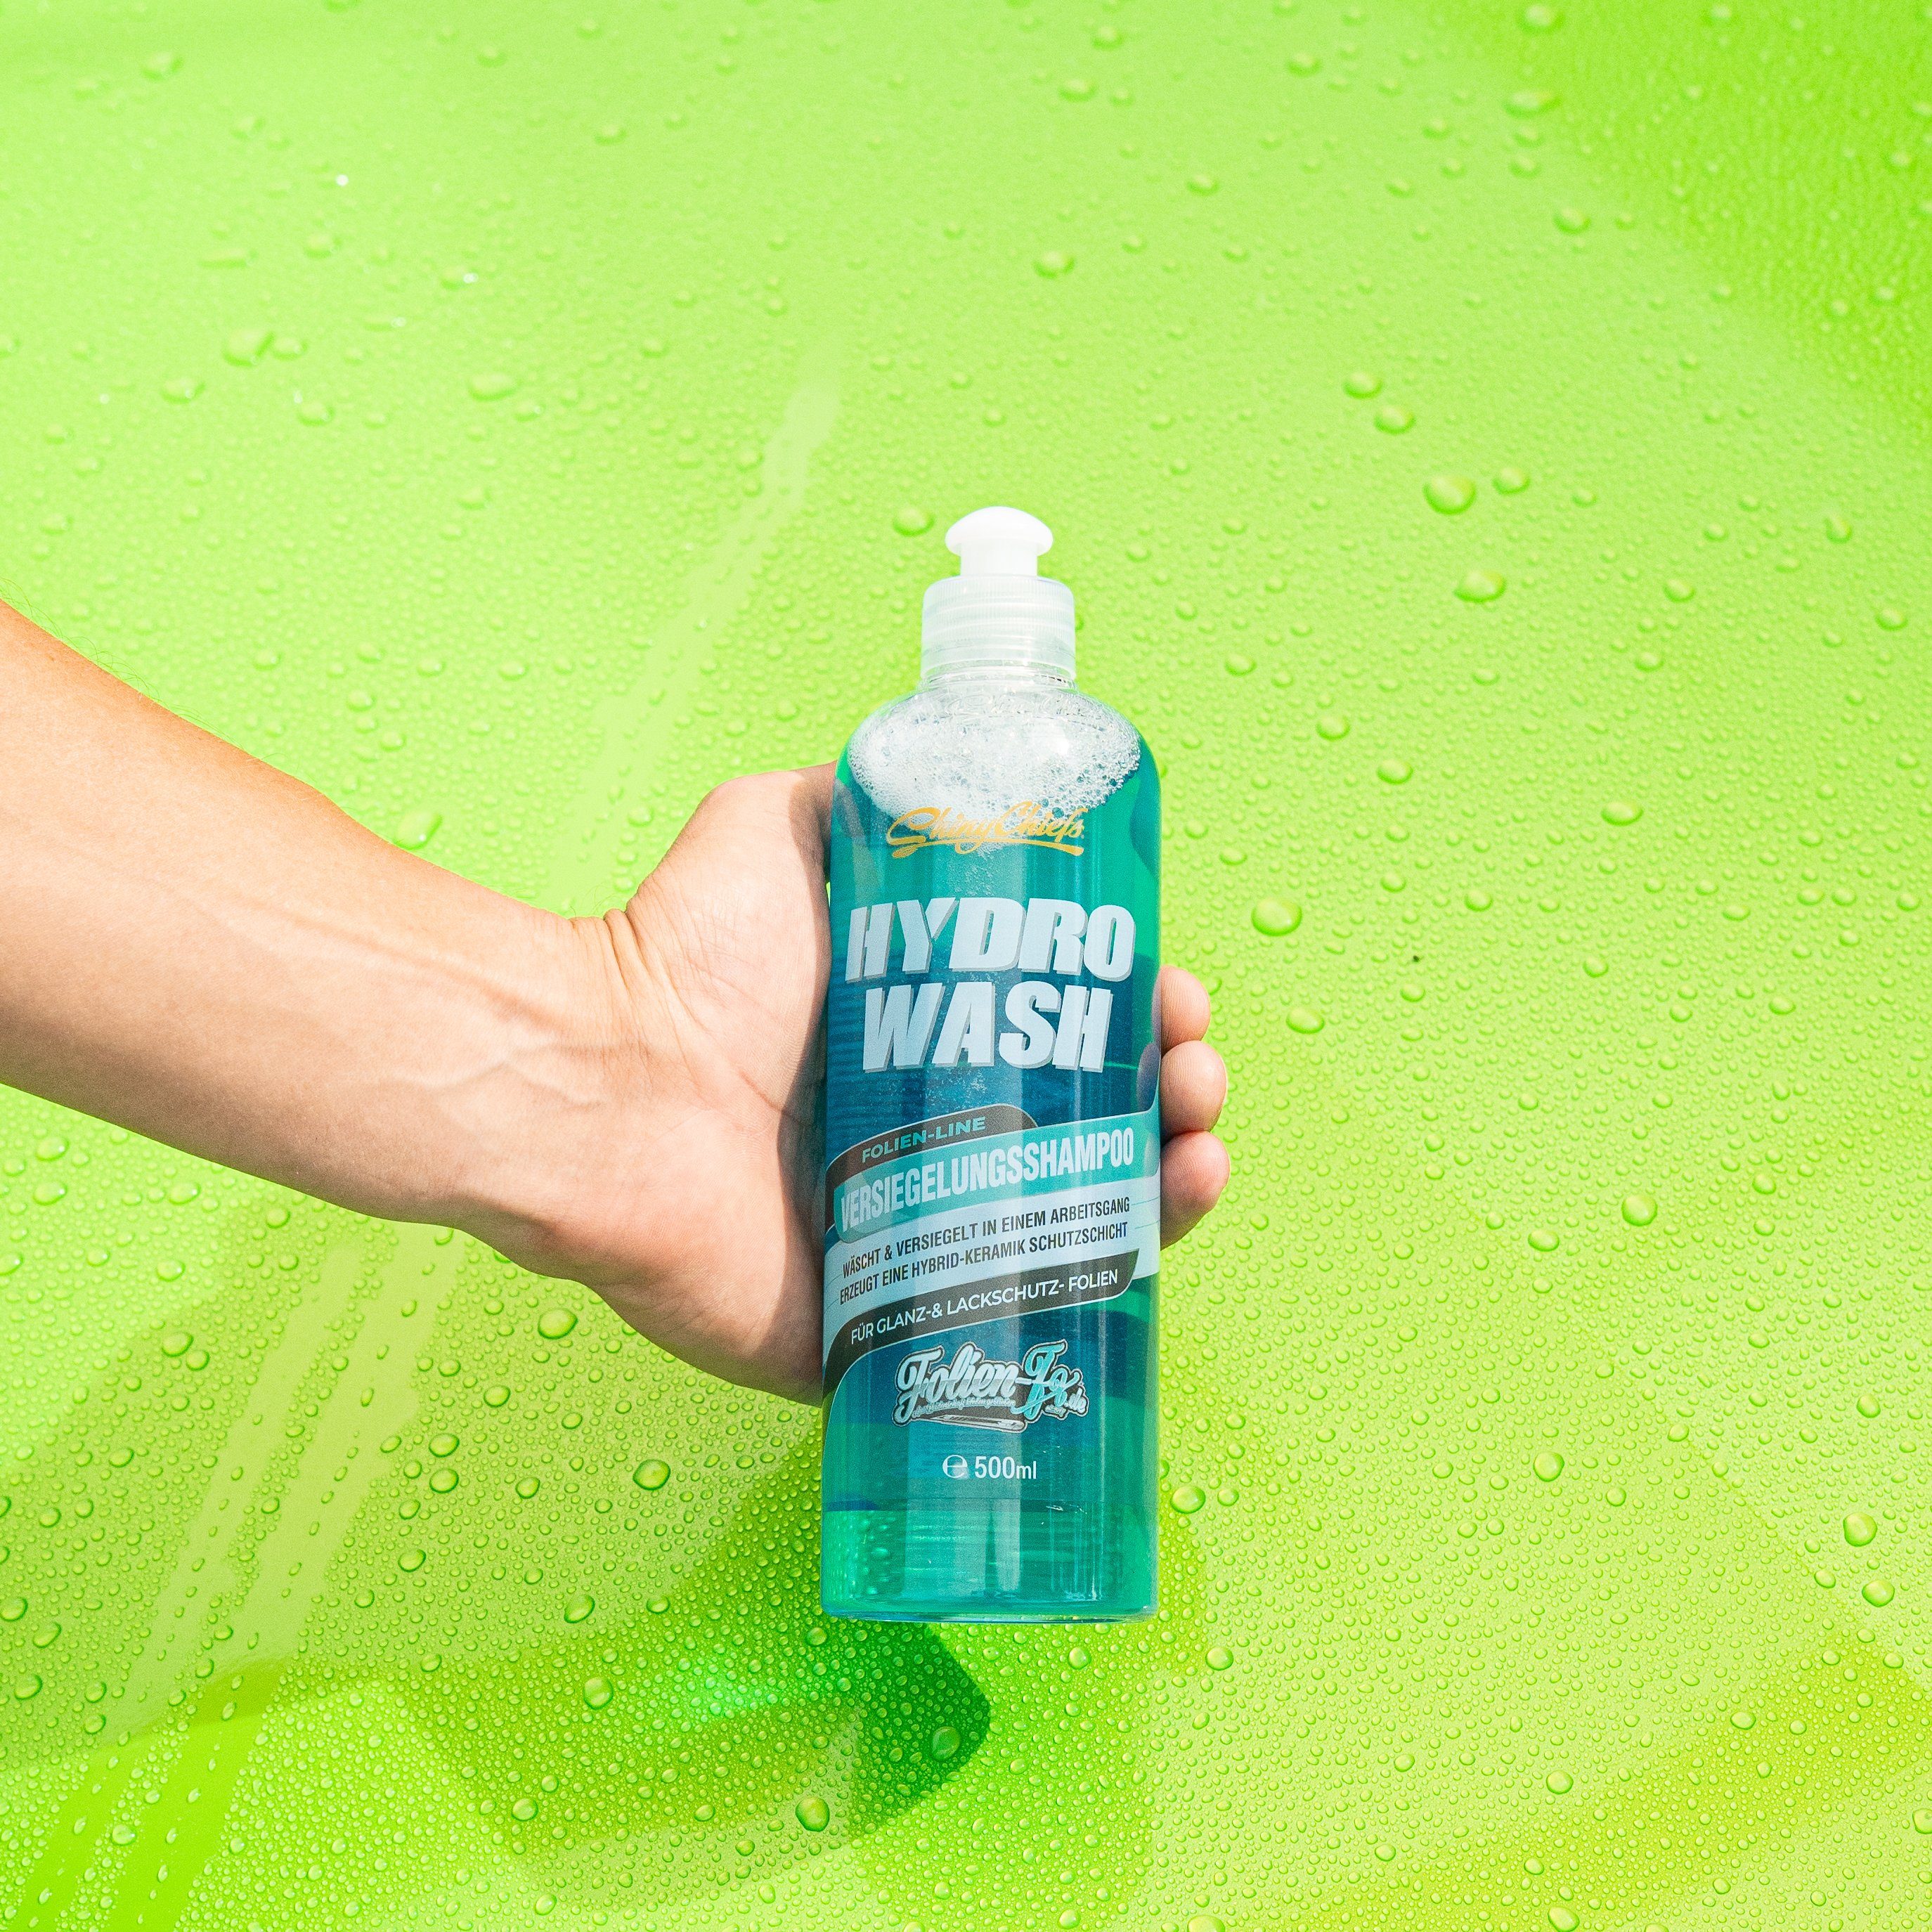 HYDRO Glanz- Lackschutzfolien WASH Autoshampoo für und - VERSIEGELUNGSSHAMPOO ShinyChiefs